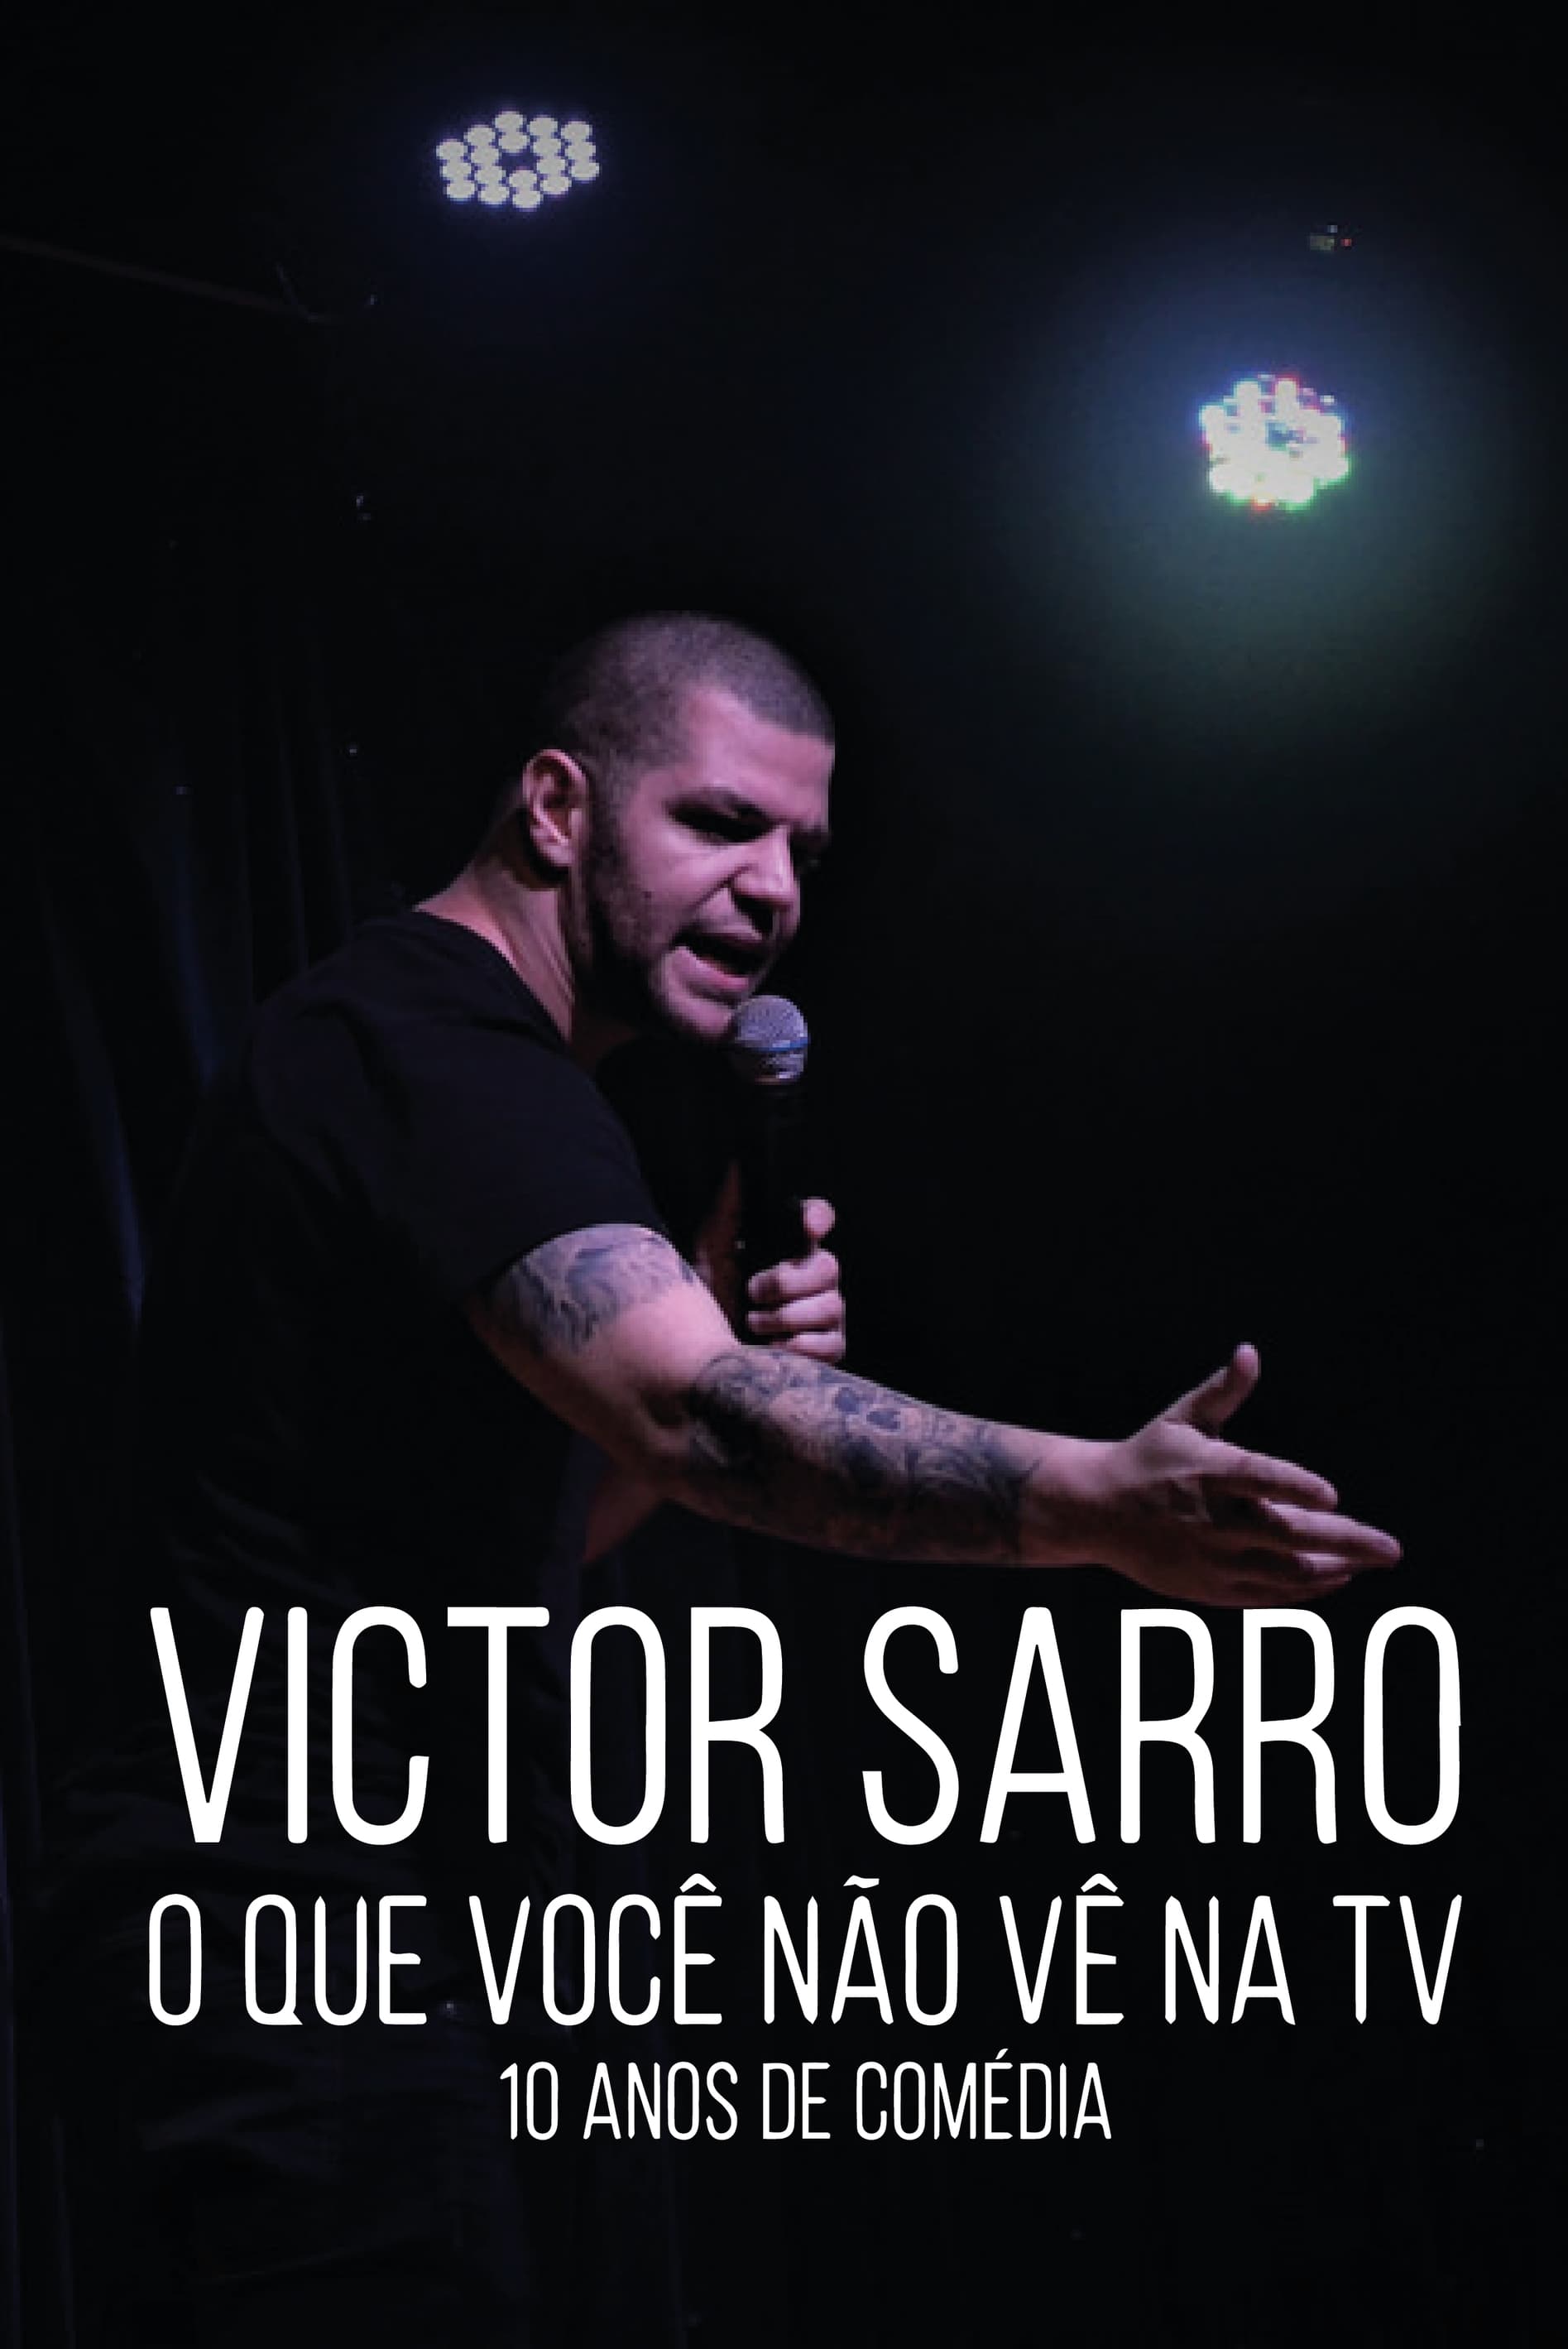 Victor Sarro: O Que Você Não Vê Na TV